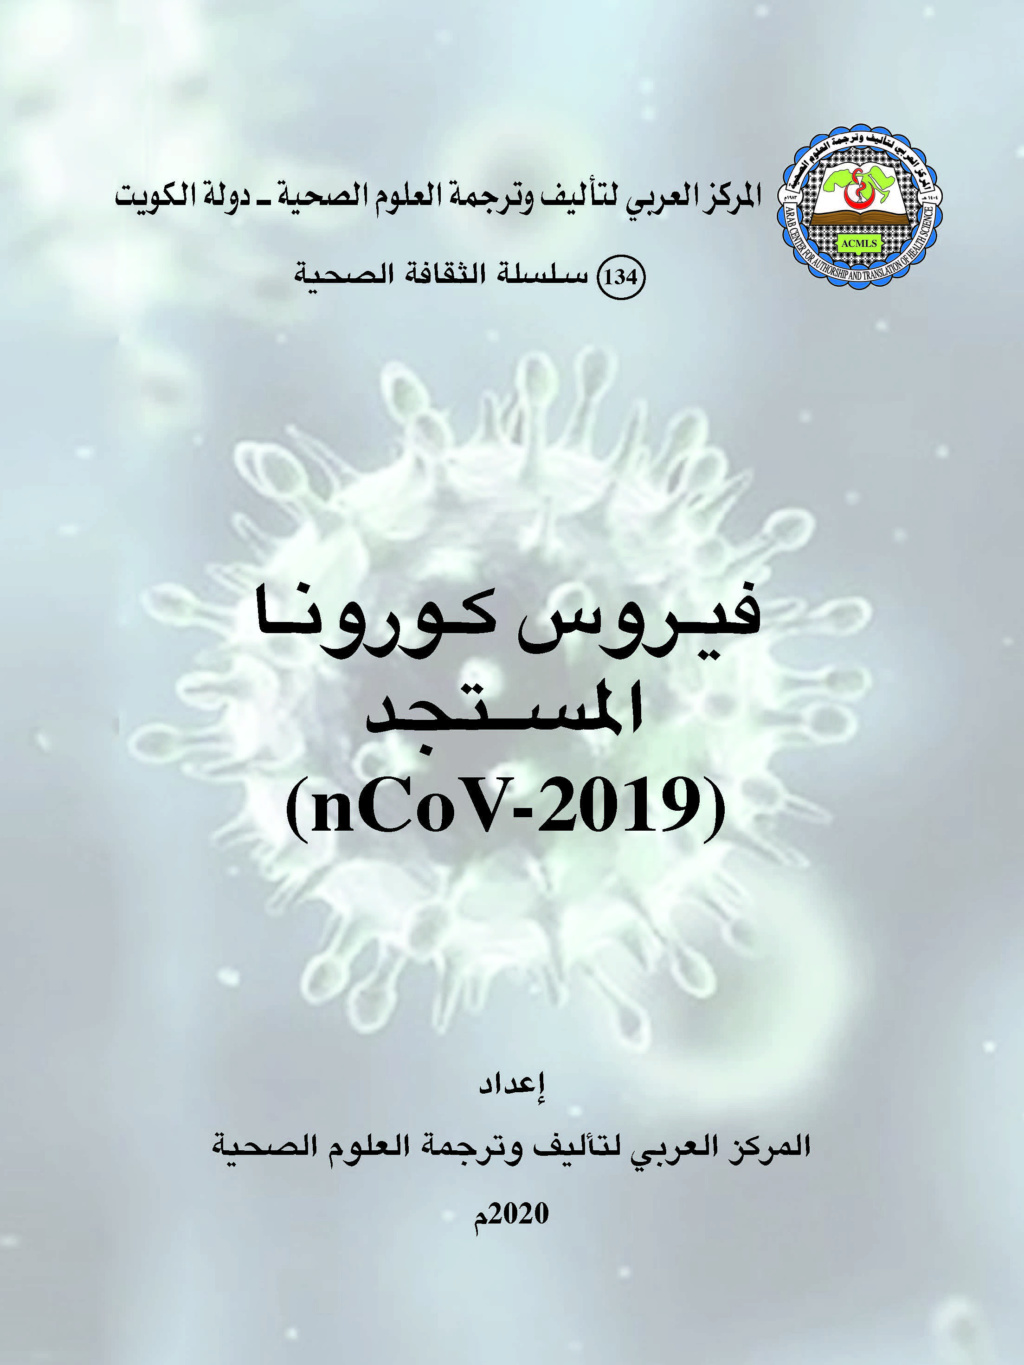 فيروس كورونا المستجد (nCOV-2019)   المركز العربي لتأليف وترجمة العلوم الصحية - أكملز  Aoi_ai10